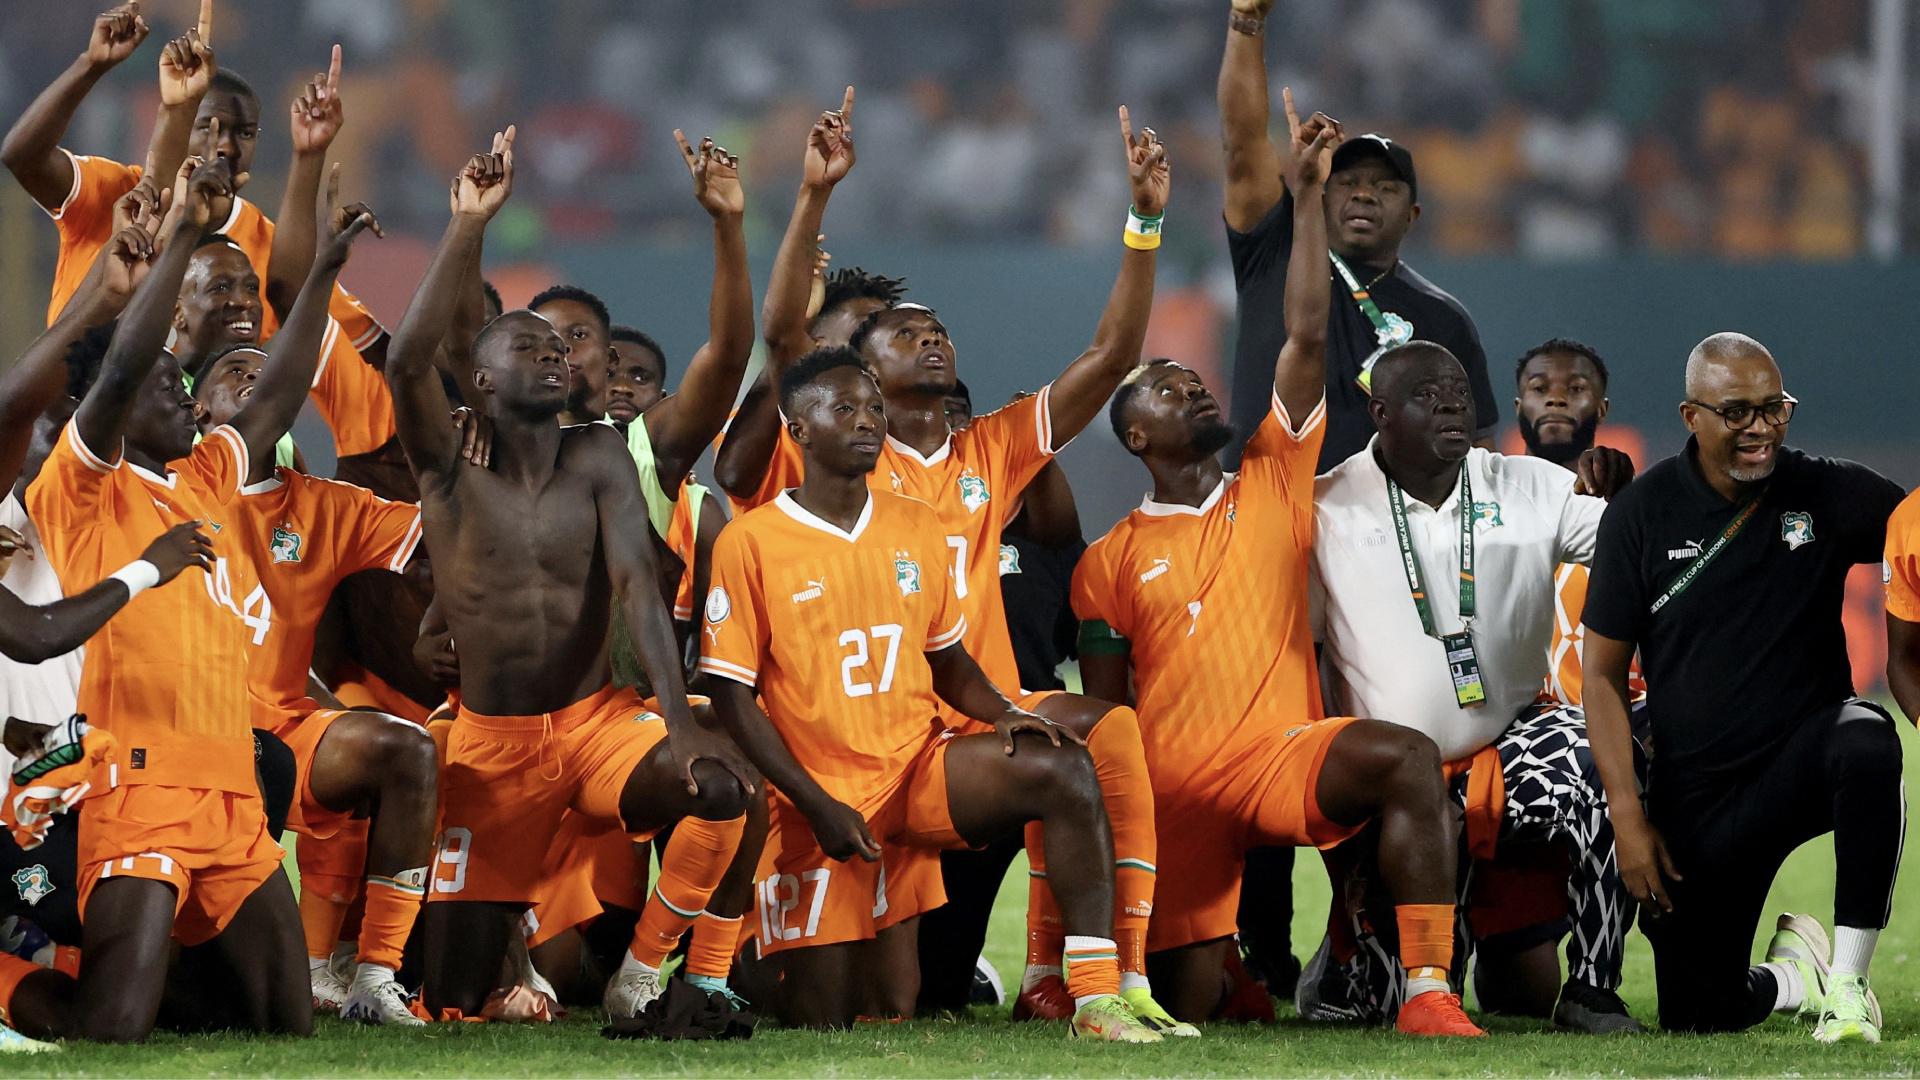 El último penal y la celebración de Costa de Marfil contra Senegal.mp4